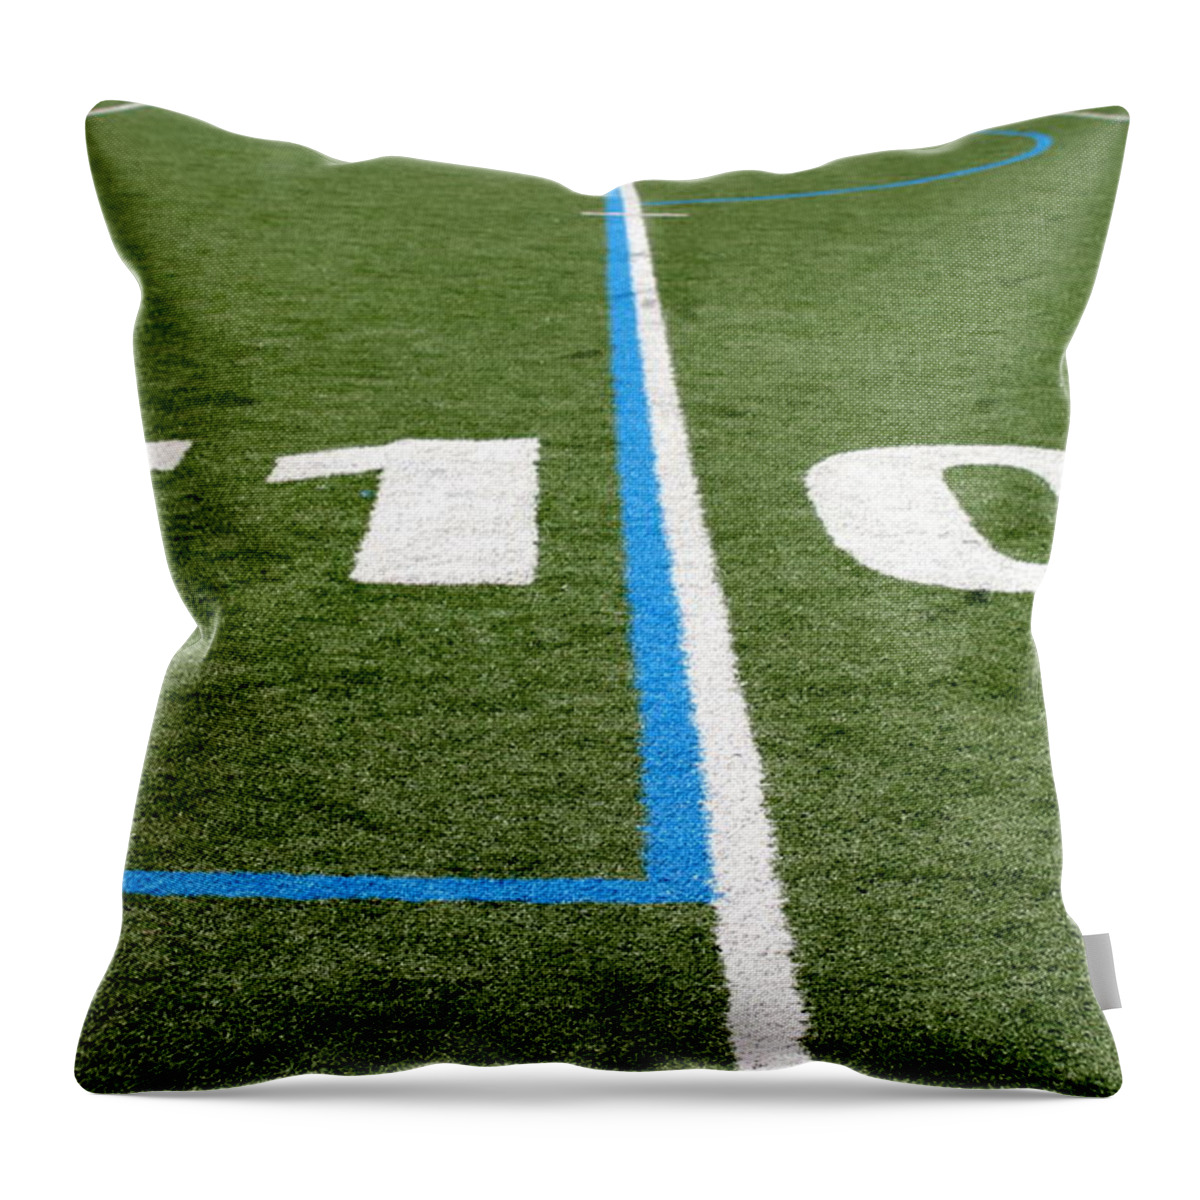 American Throw Pillow featuring the photograph Football Field Ten by Henrik Lehnerer